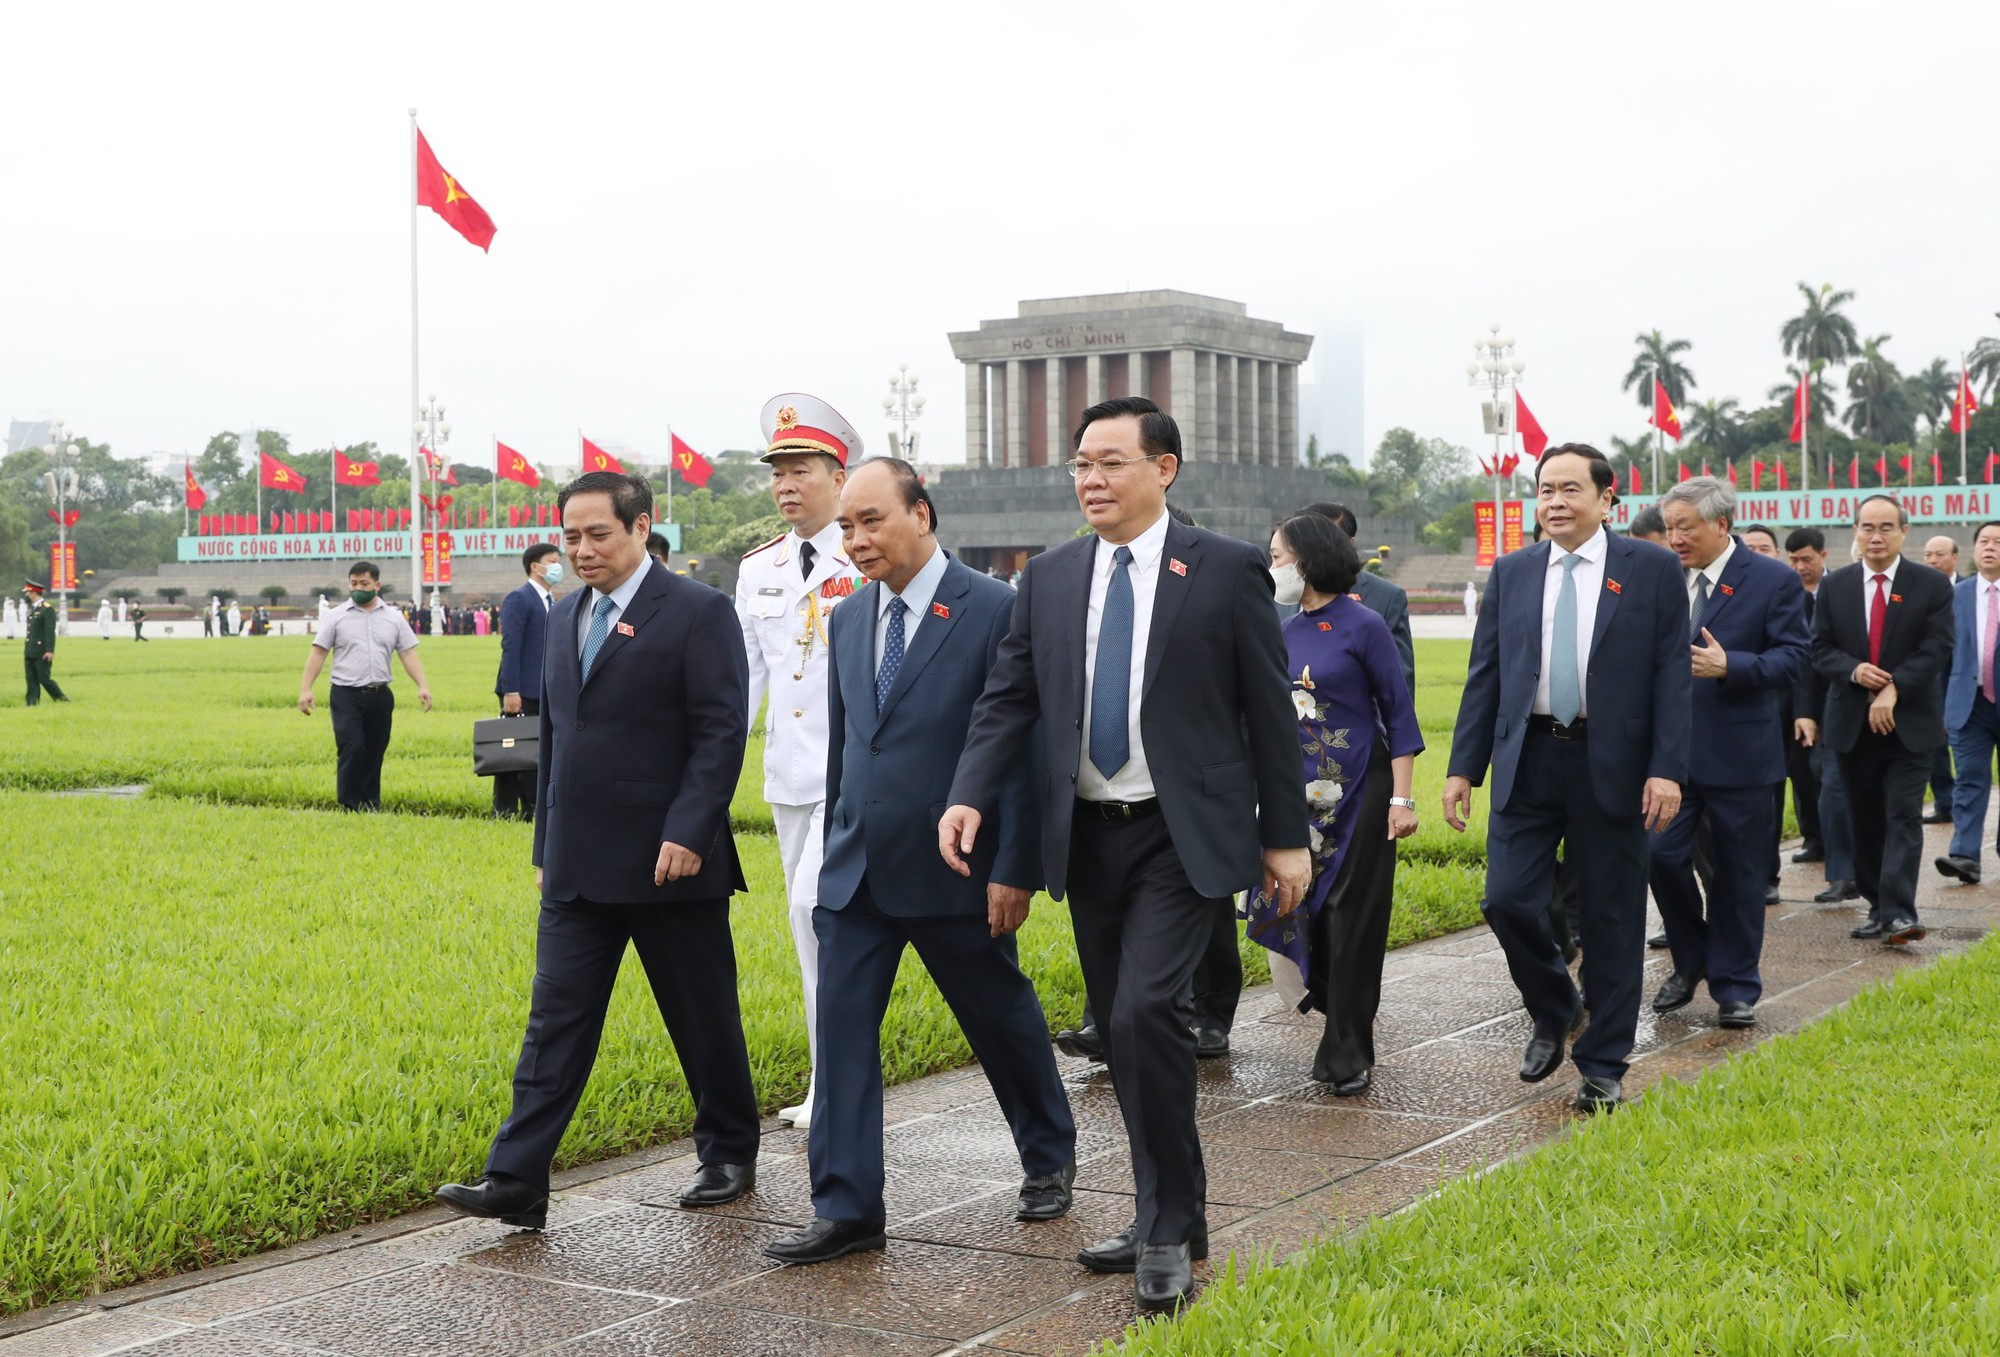 Sáng 23/5, tại Hà Nội, trước giờ khai mạc Kỳ họp thứ 3 Quốc hội khóa XV, các đồng chí lãnh đạo Đảng và Nhà nước, Mặt trận Tổ quốc Việt Nam cùng các vị đại biểu Quốc hội đã tới đặt vòng hoa và vào Lăng viếng Chủ tịch Hồ Chí Minh.